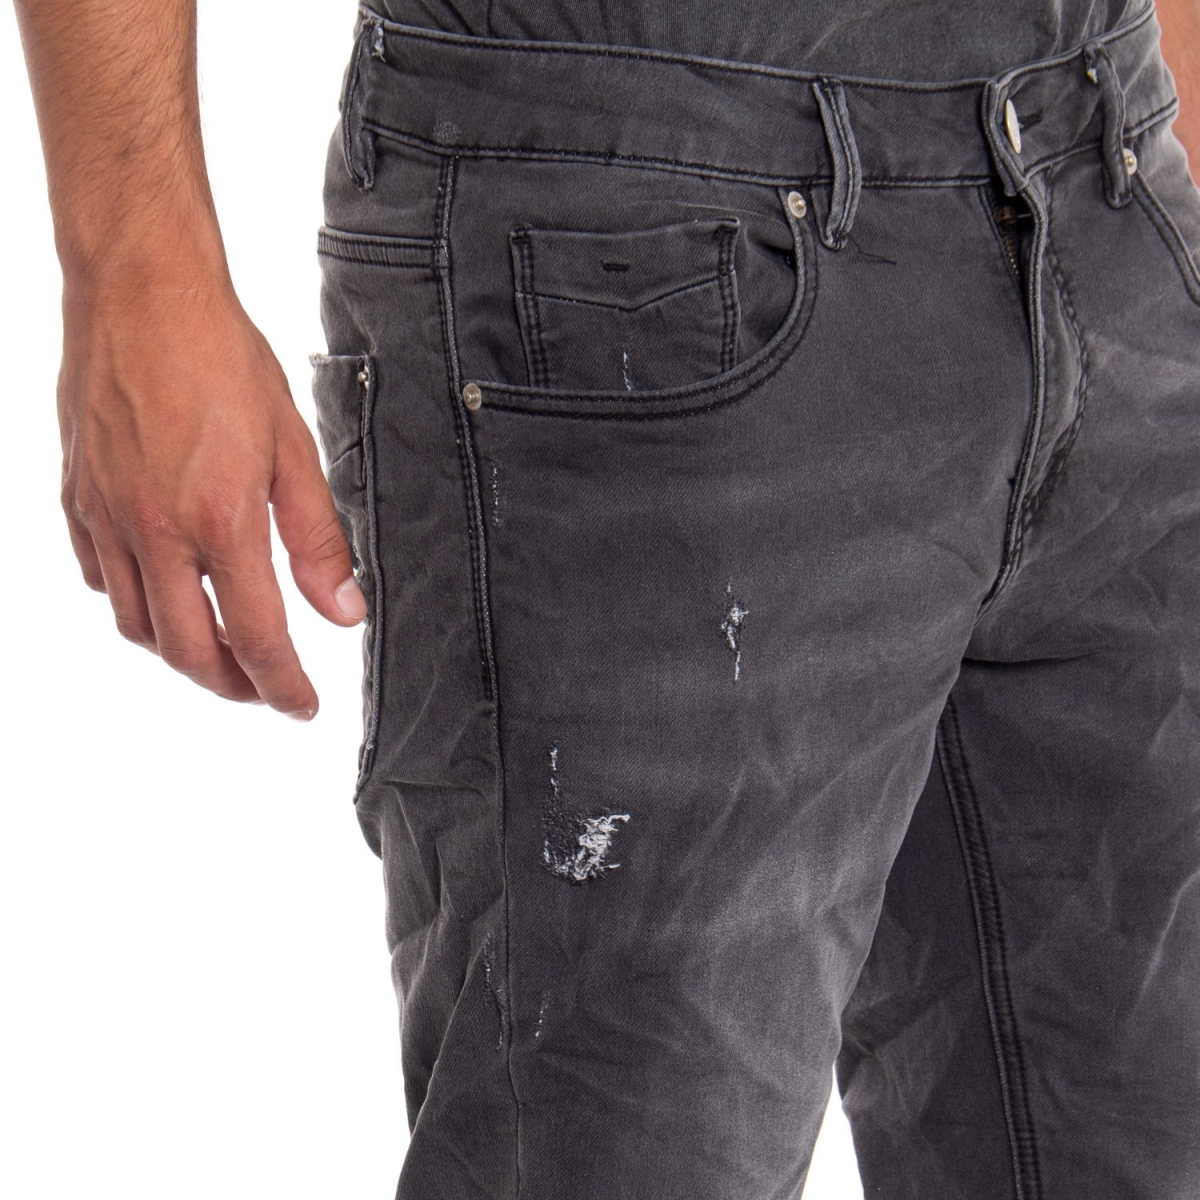 Kleidung Jeans mann Jeans LPC508 LANDEK PARK Cafedelmar Shop